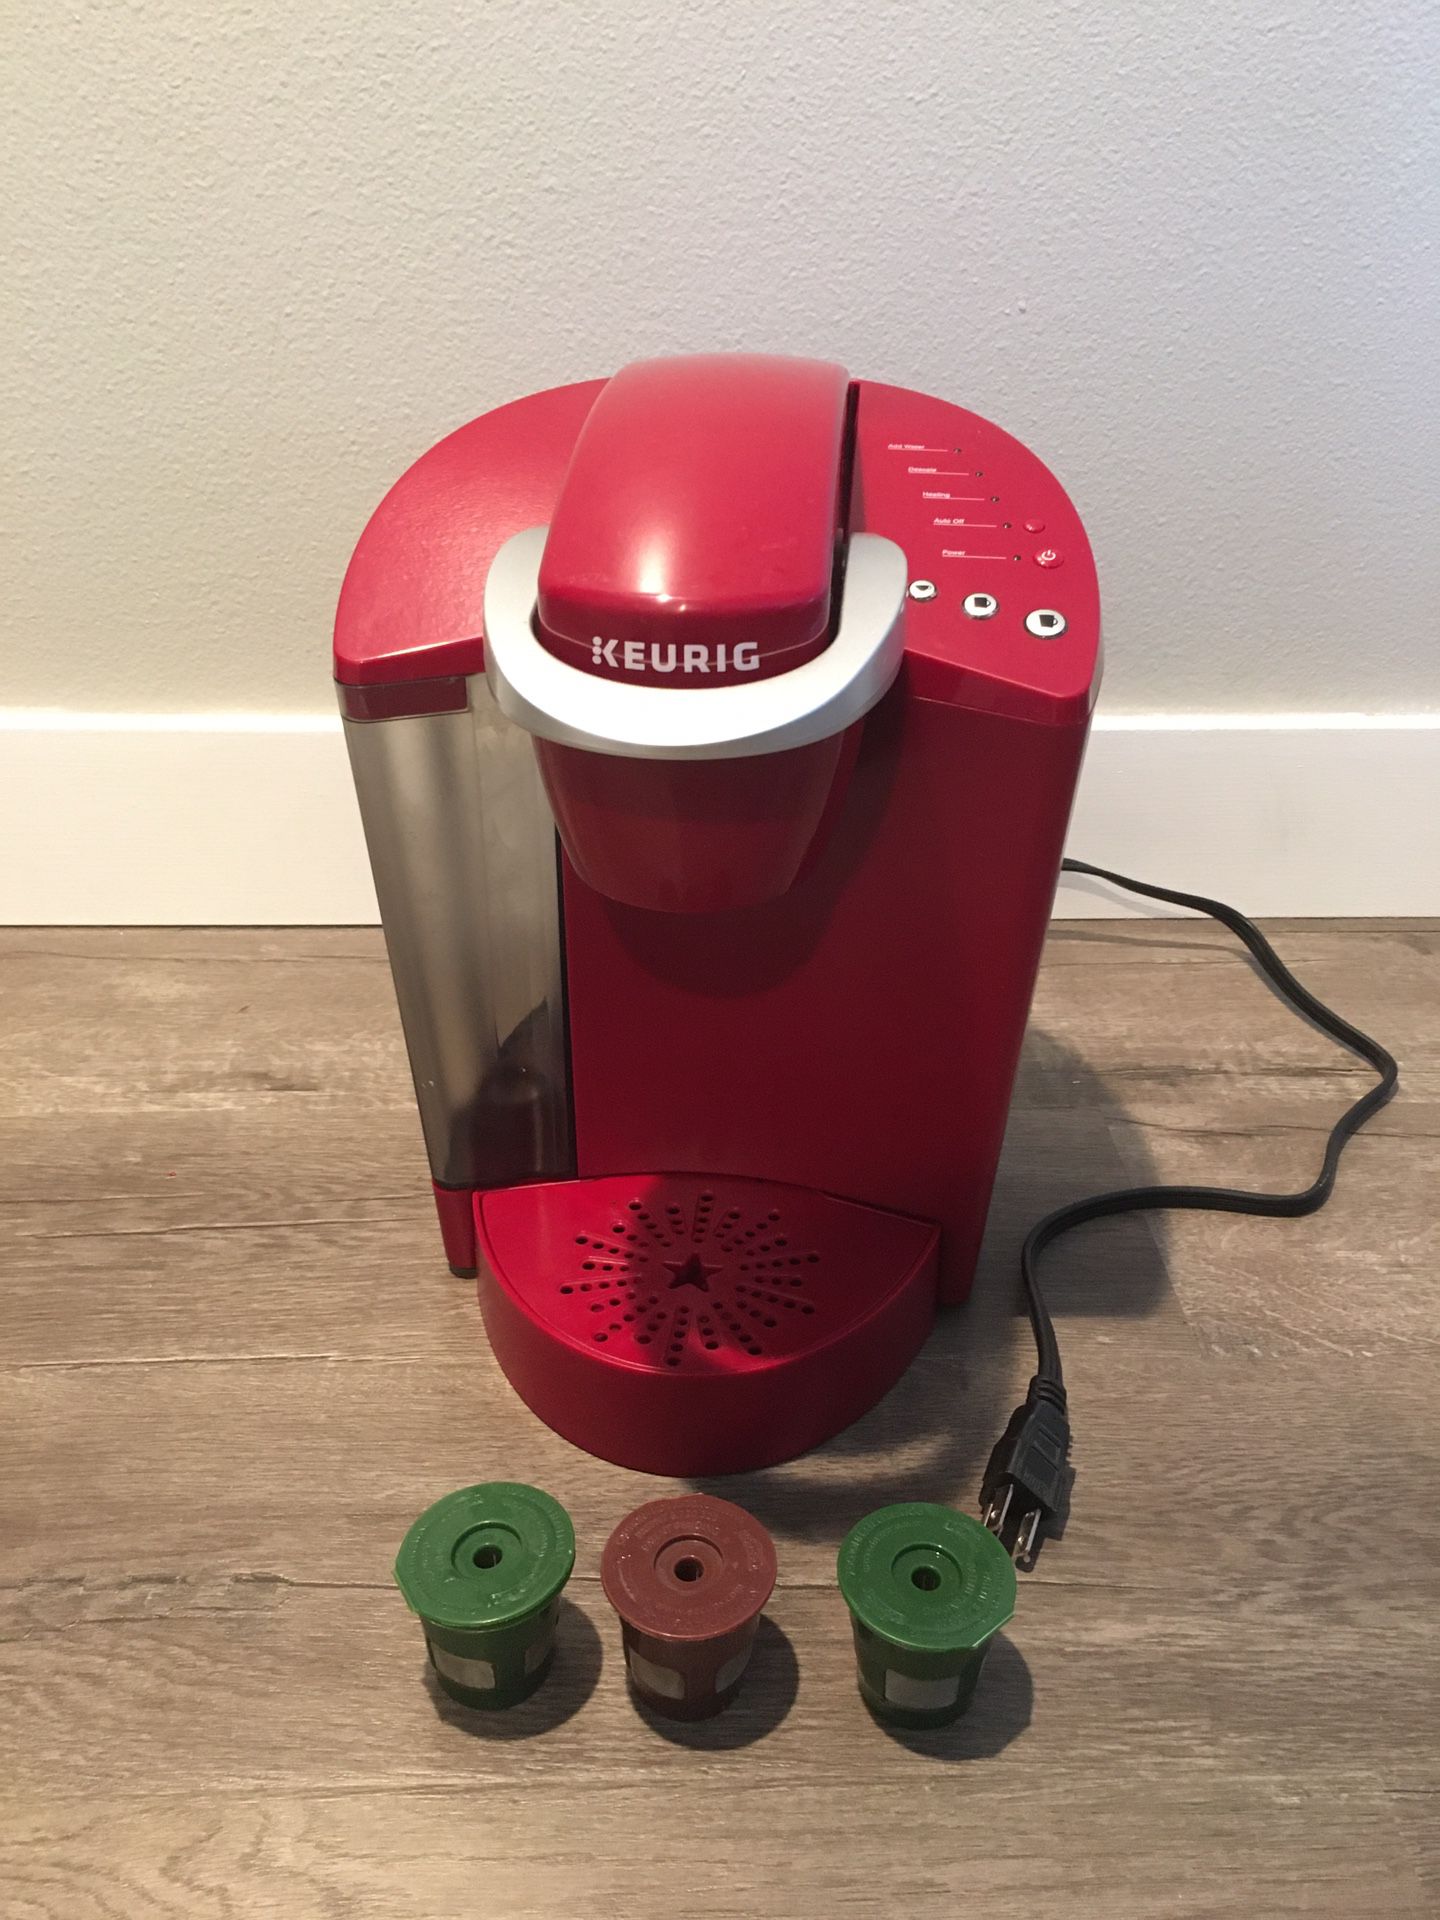 Keurig coffee maker + 3 reusable filters